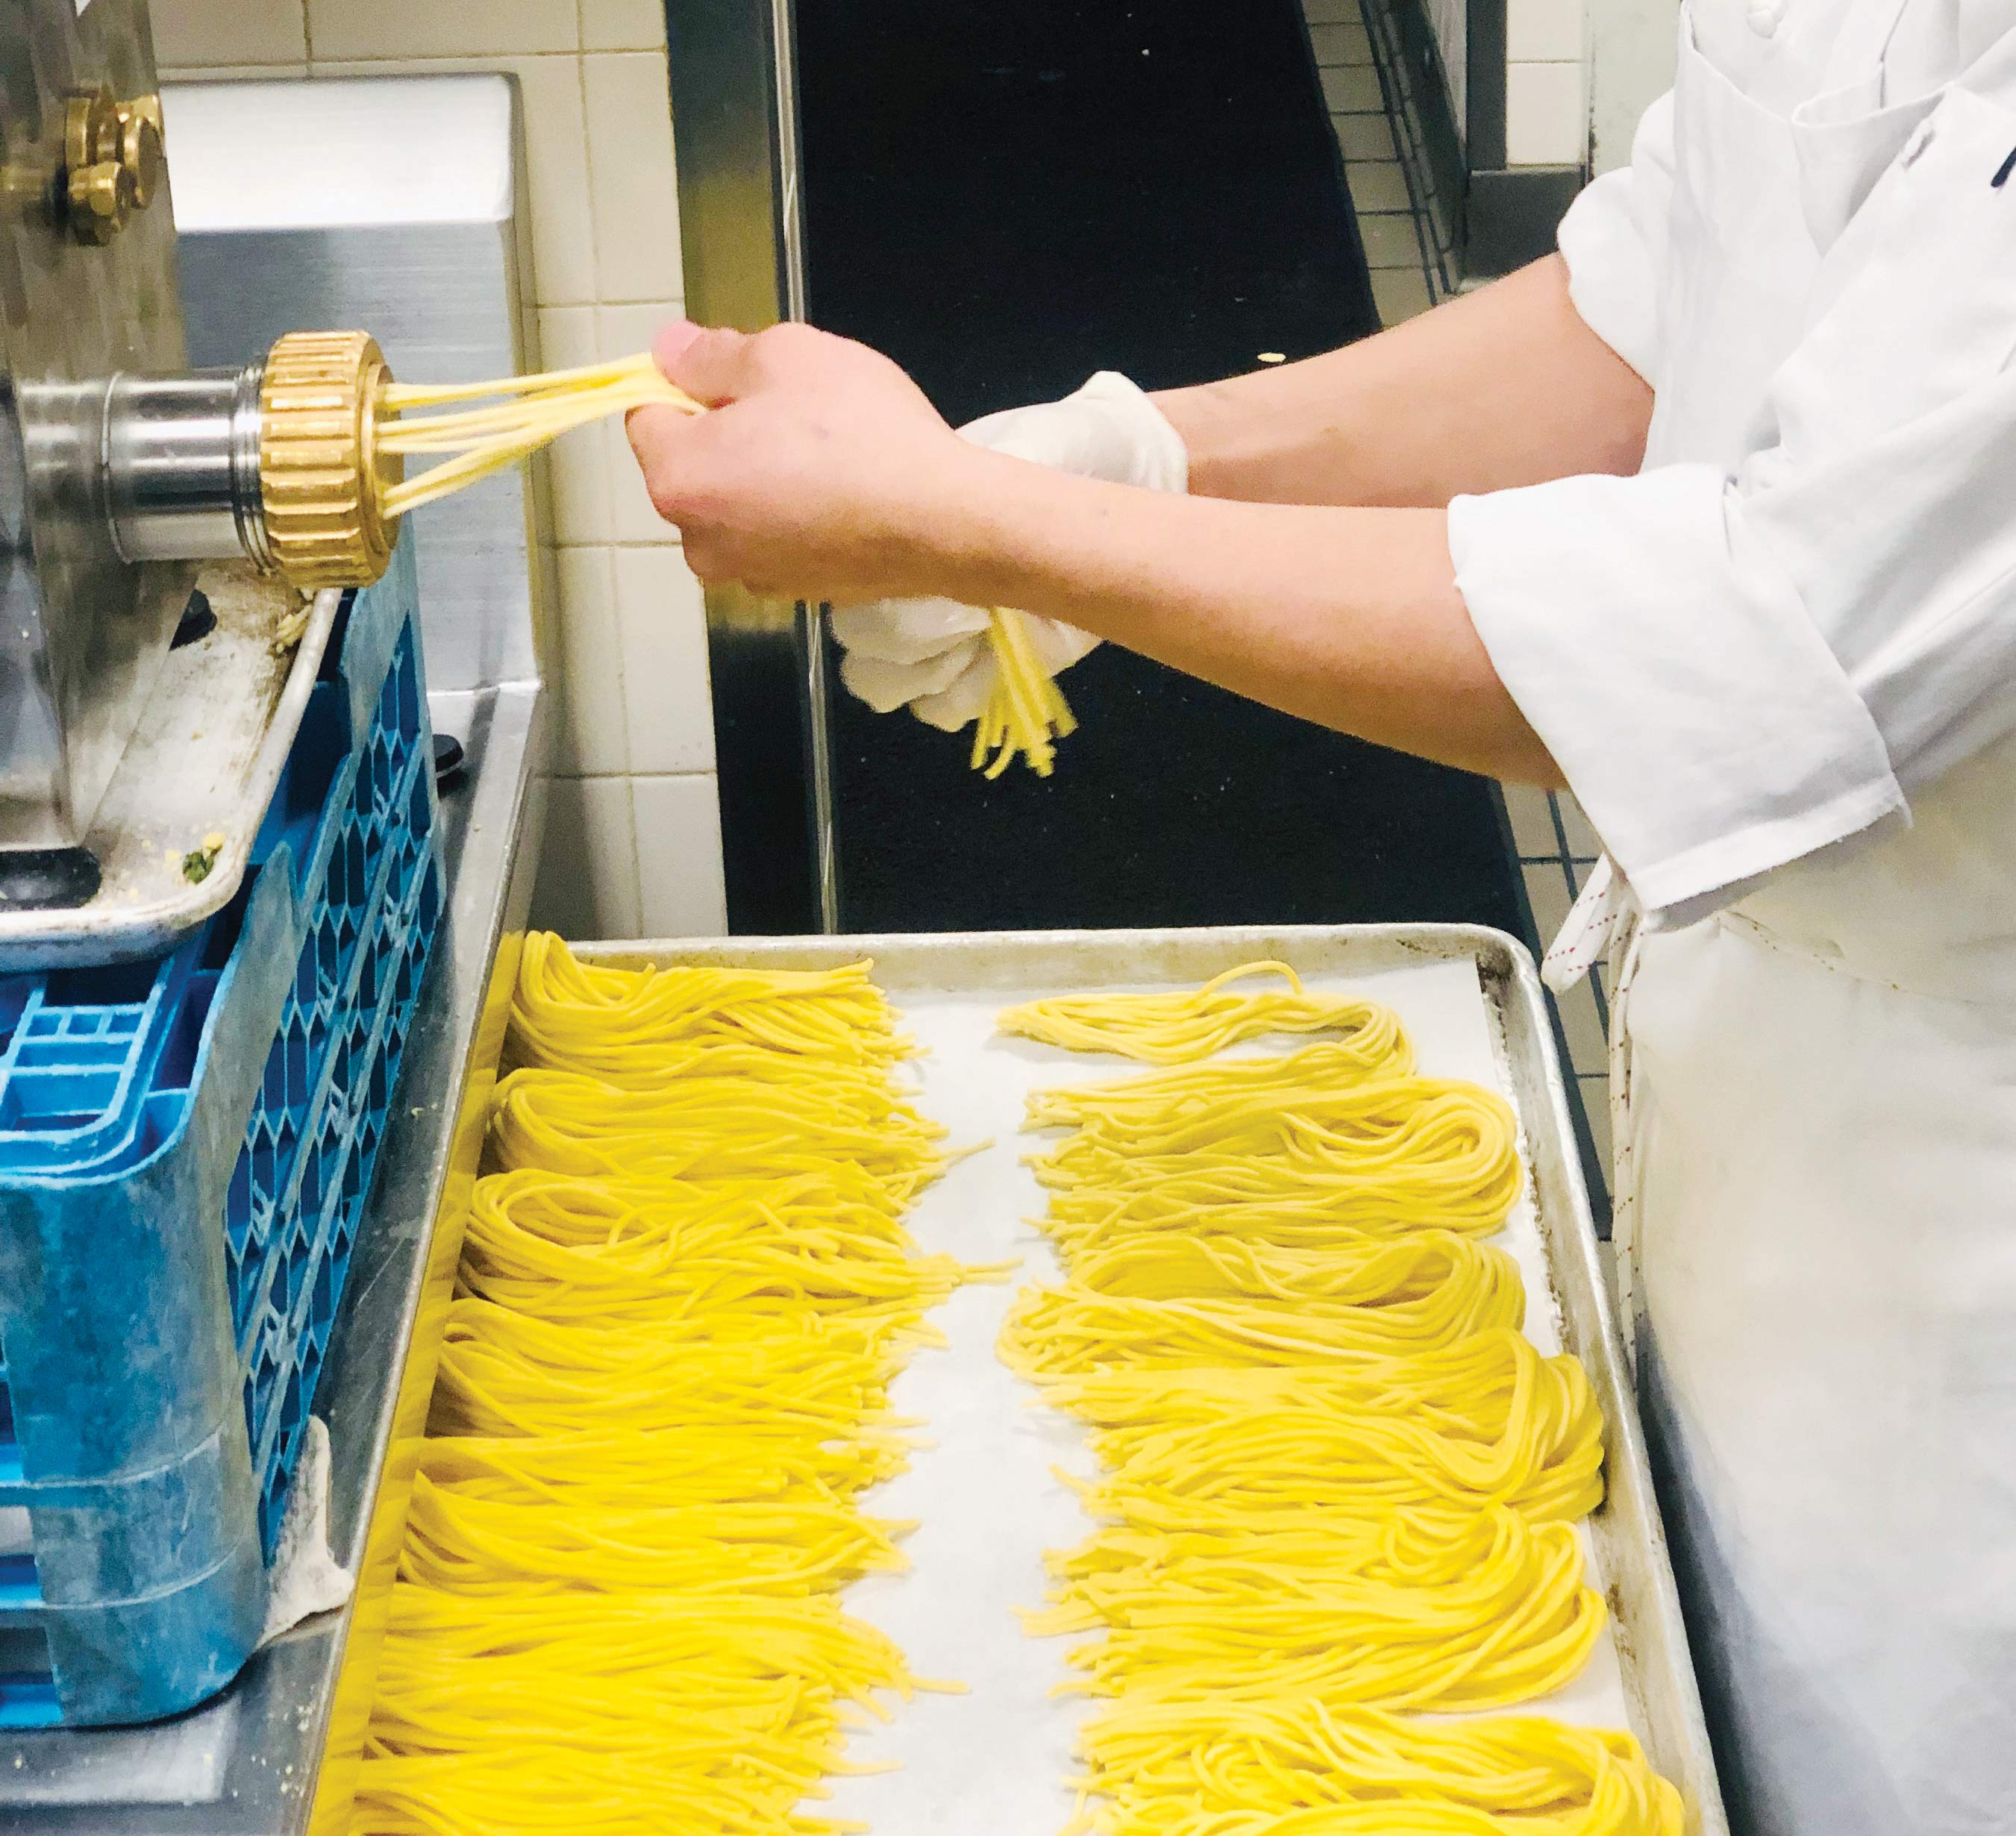 Chittara making fresh pasta.